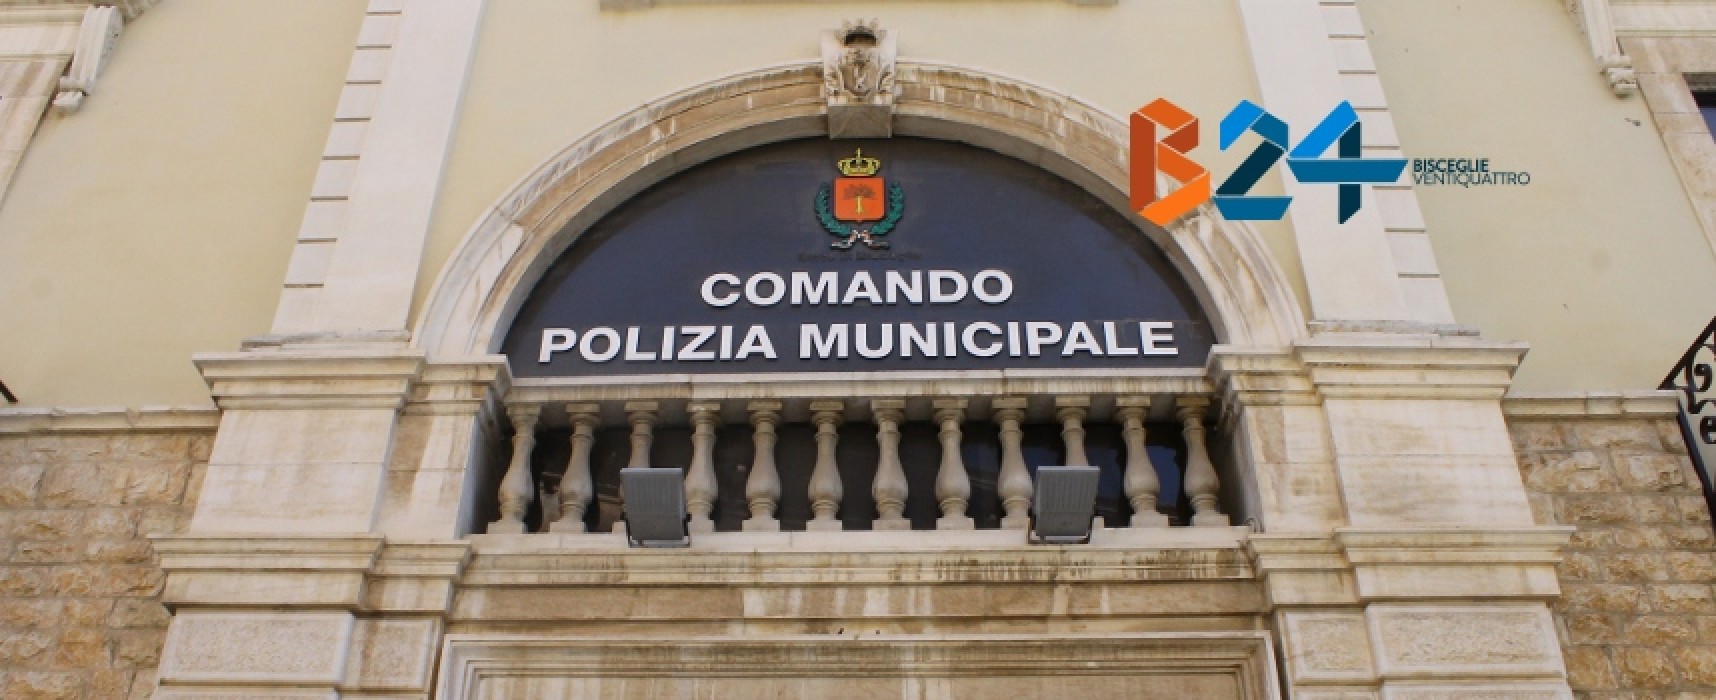 Comune di Bisceglie alla ricerca di un nuovo dirigente per la Polizia Locale / DETTAGLI